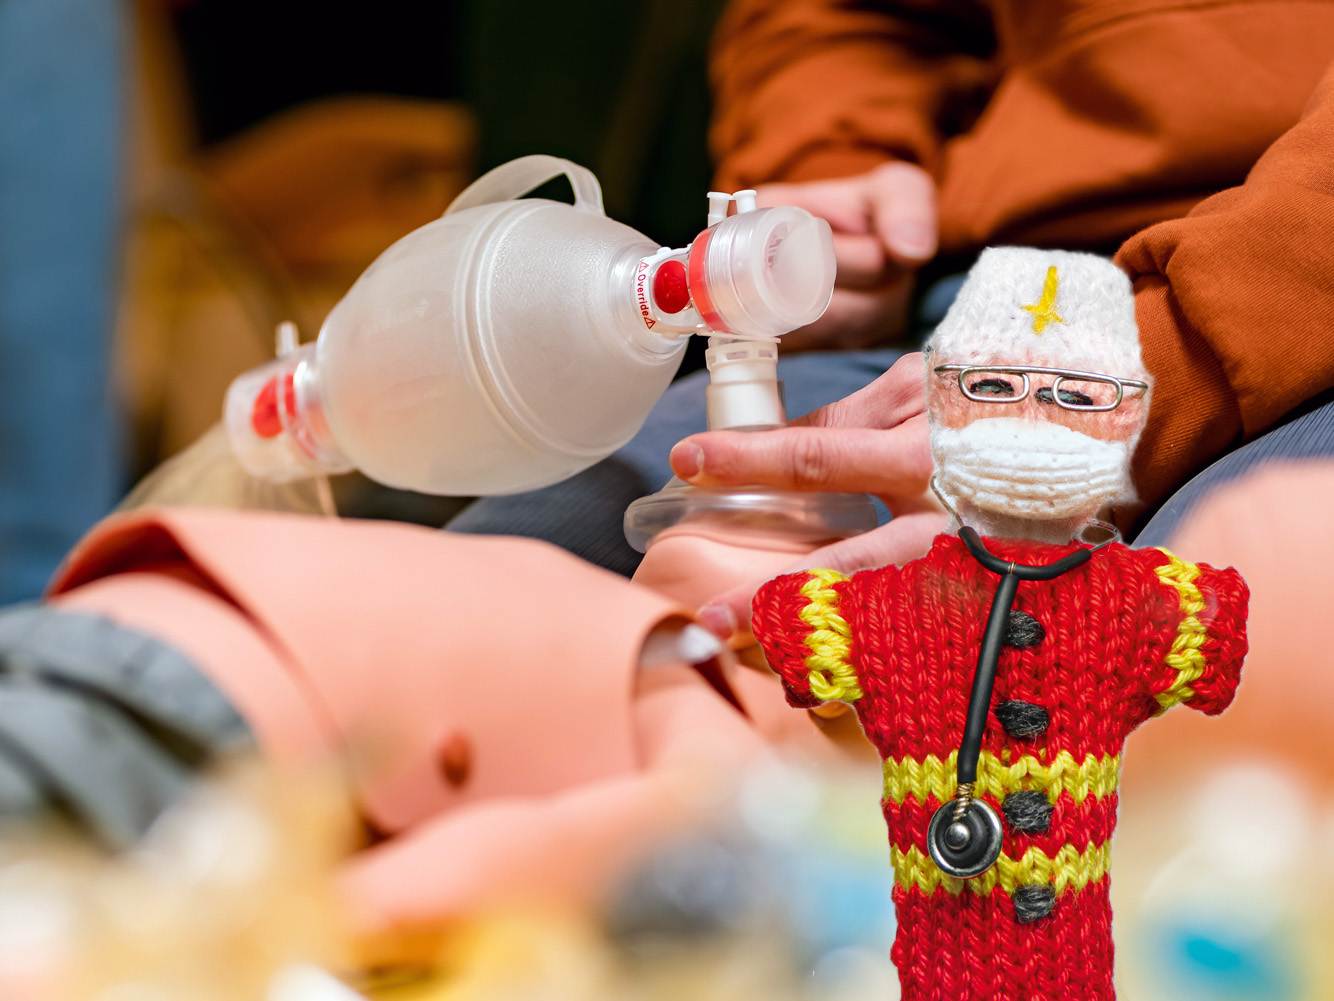 Strickpüppchen eines Kinderarztes in roter Uniform. Im Hintergrund ist ein Training mit Sauerstoffmaske und Kinderpuppen zu sehen.